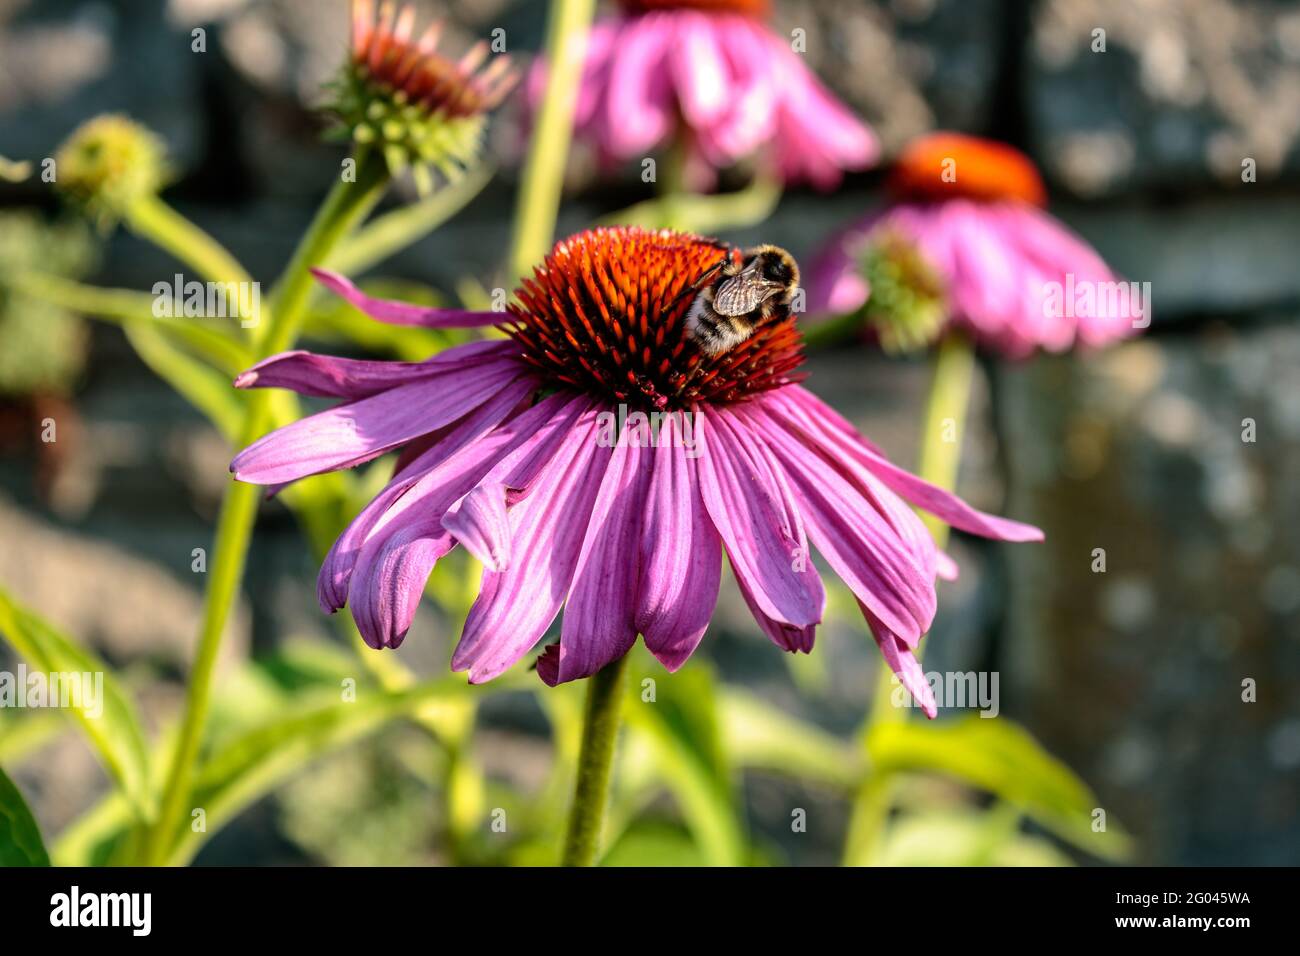 Honeybee on purple coneflower (Echinacea purpurea), close up Stock Photo